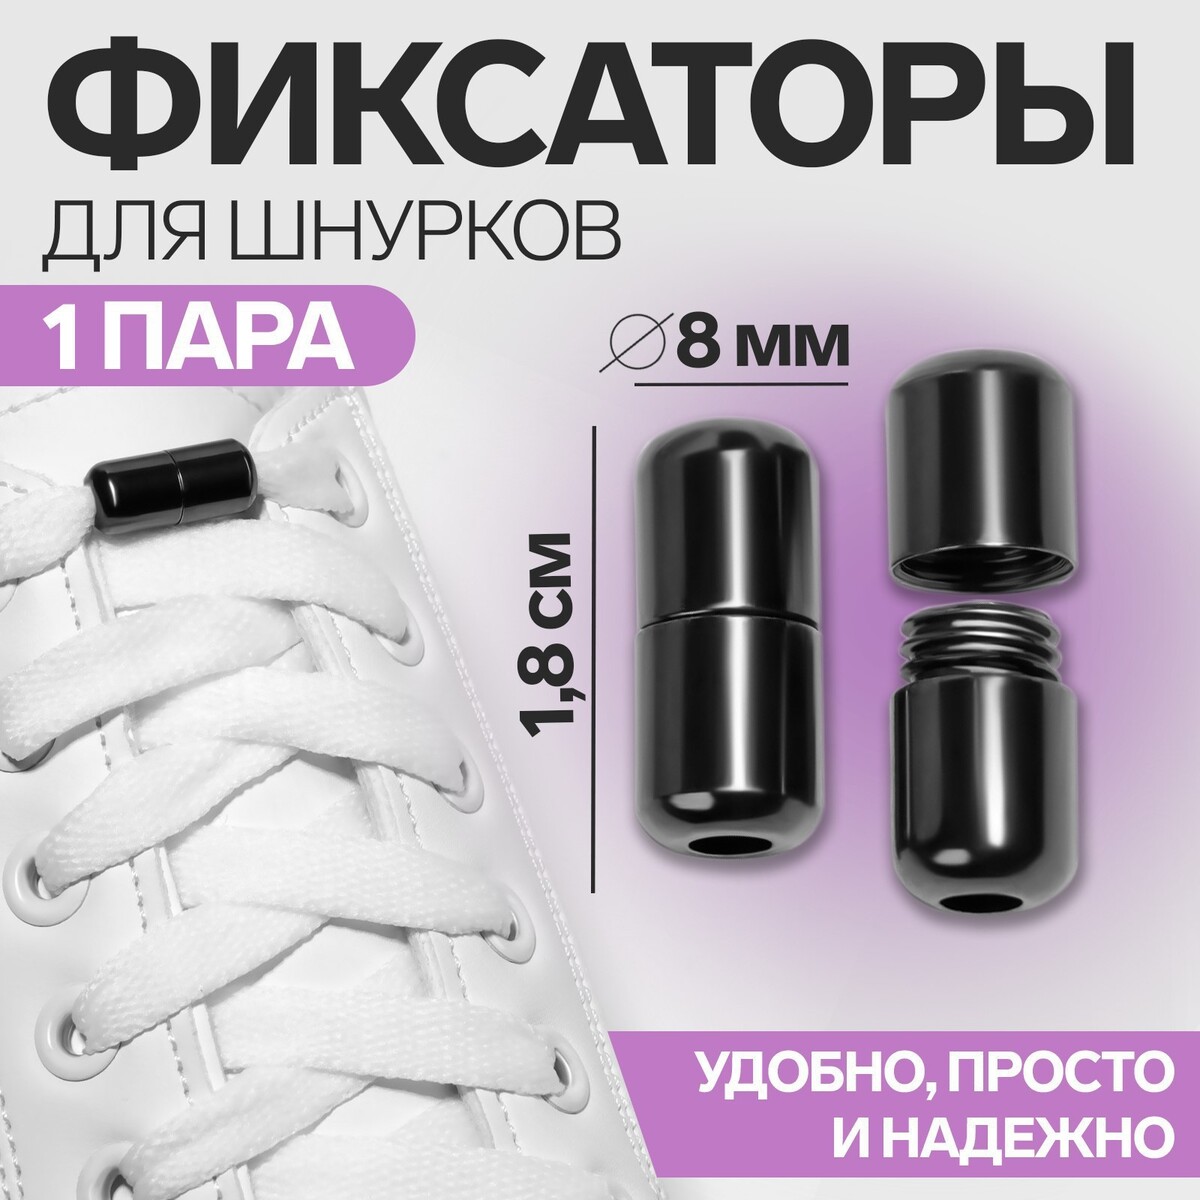 Фиксатор для шнурков, пара, d = 8 мм, 1,8 см, цвет черный никель фиксатор для шнурков пара d 8 мм 1 8 см